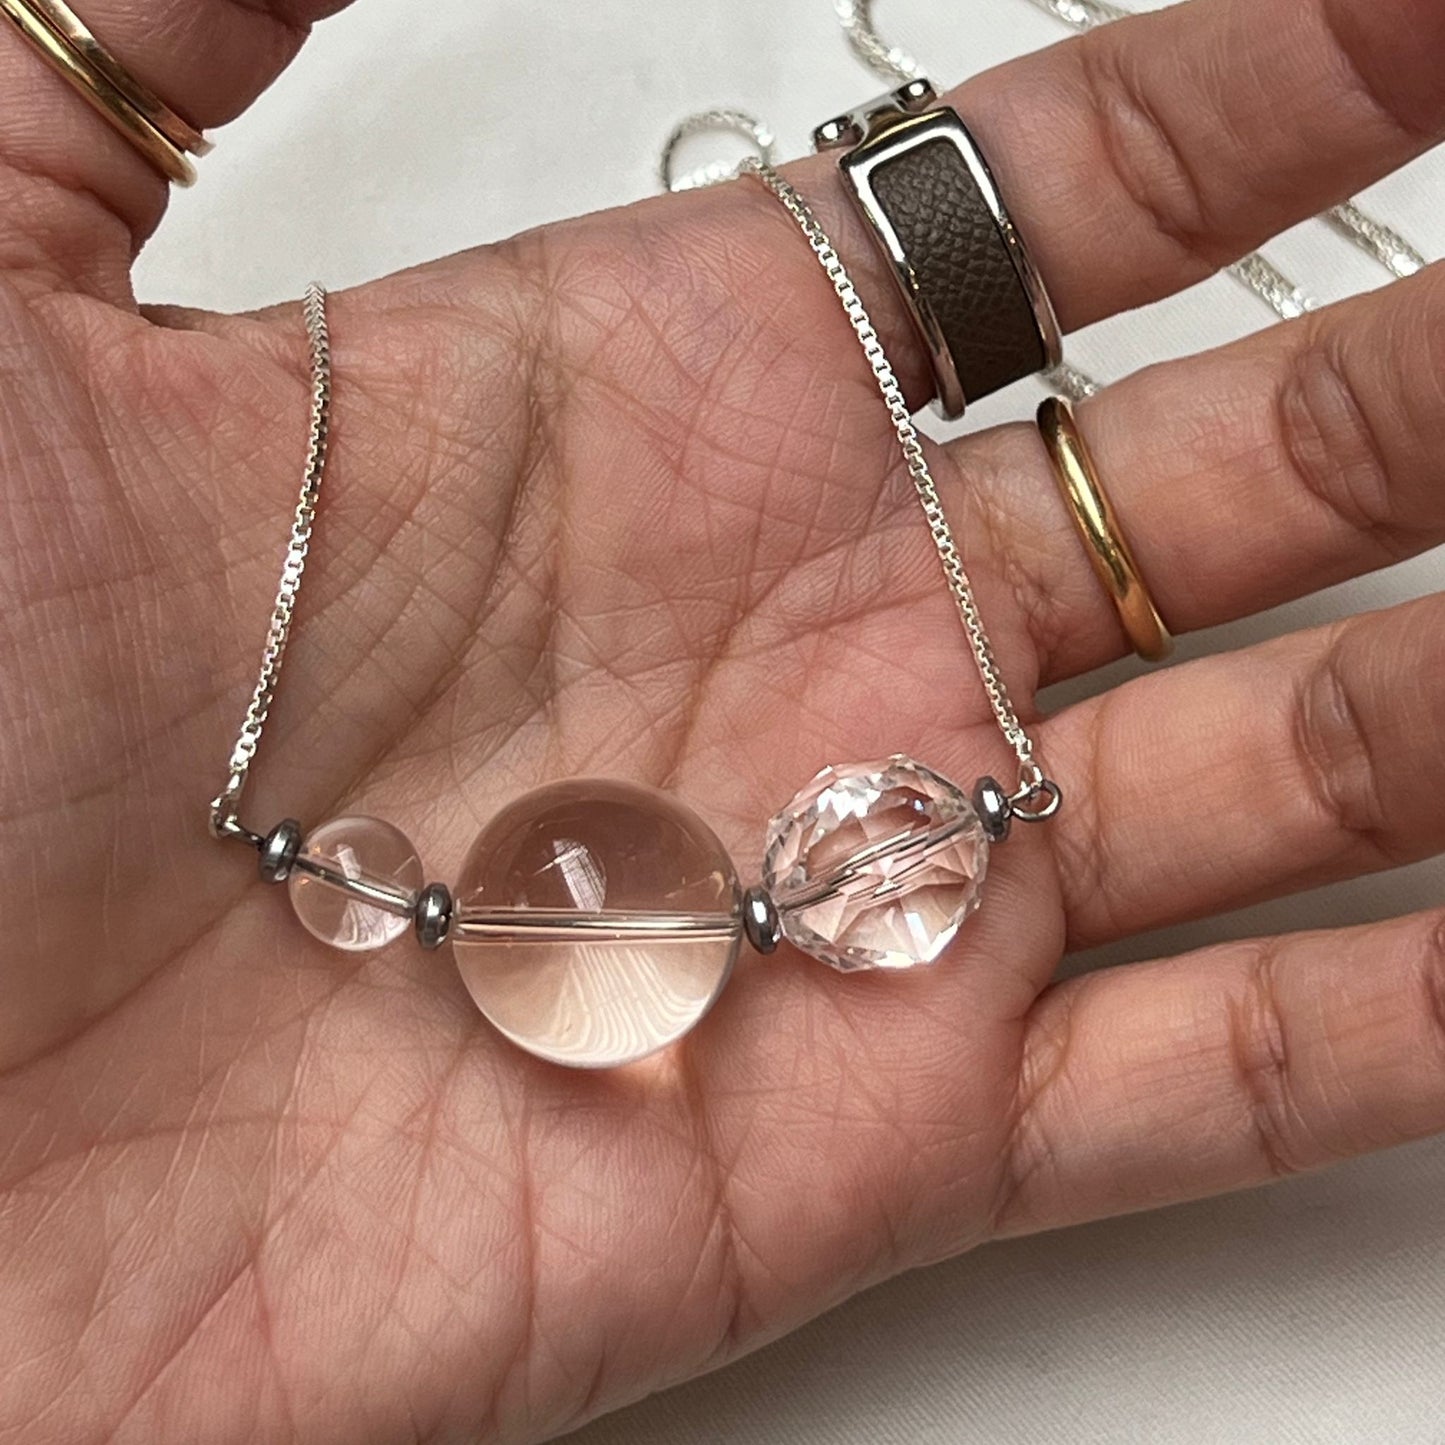 Clear Quartz Necklace